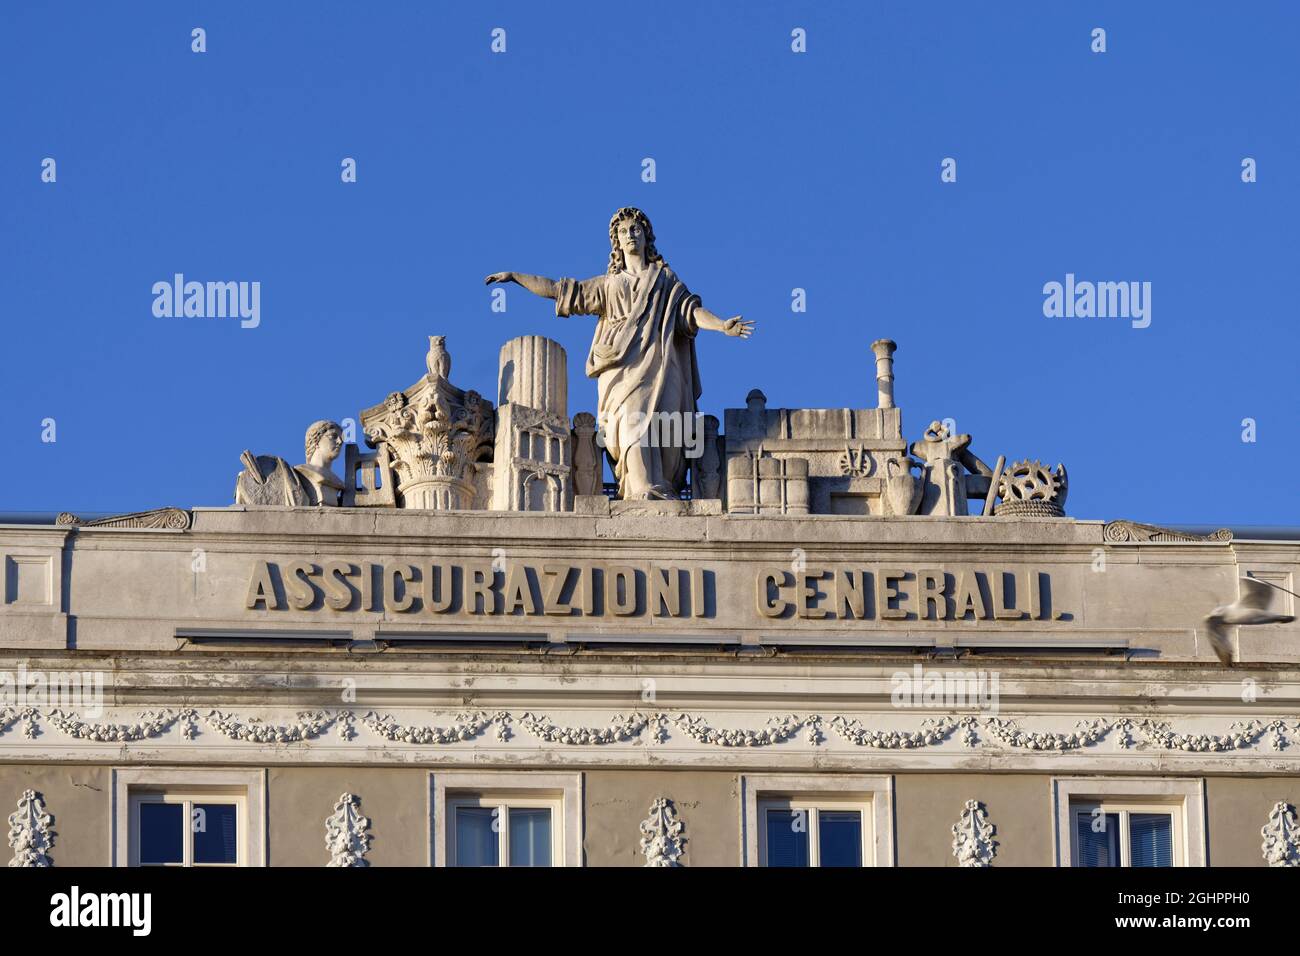 Piazza Unita d'Italia, Casa Stratti, Generali Insurance, facade with statues on the roof, Old Town, Trieste, Friuli Venezia Giulia, Italy Stock Photo